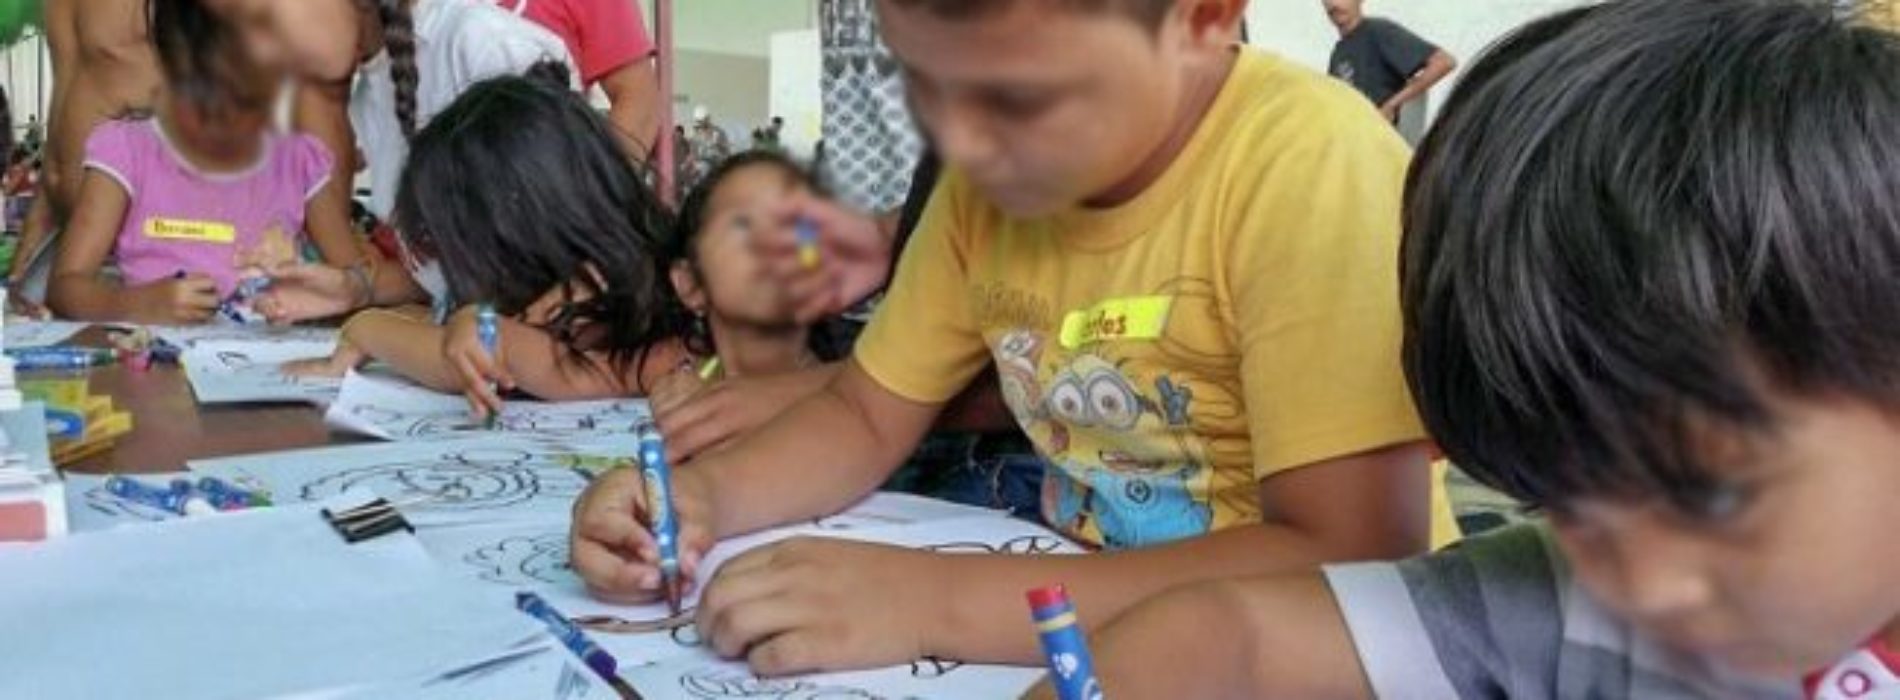 Gobierno de Oaxaca reitera apoyo humanitario a Caravana
Migrante